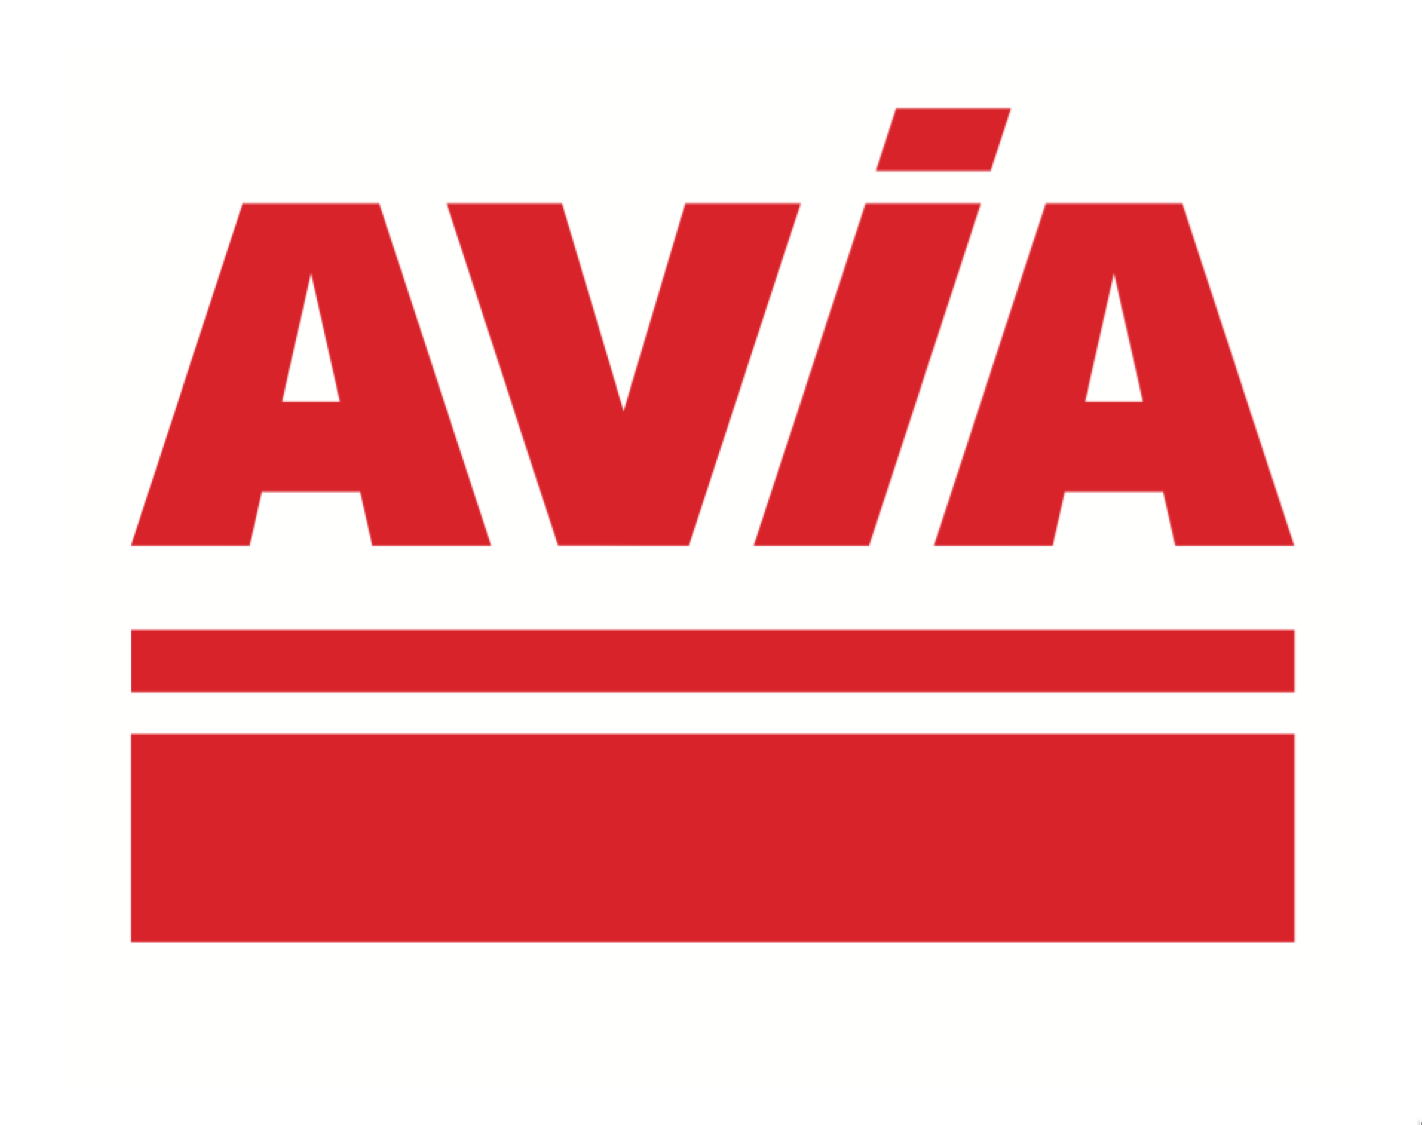 Aviva Logo - Aviva logo - Raw Air